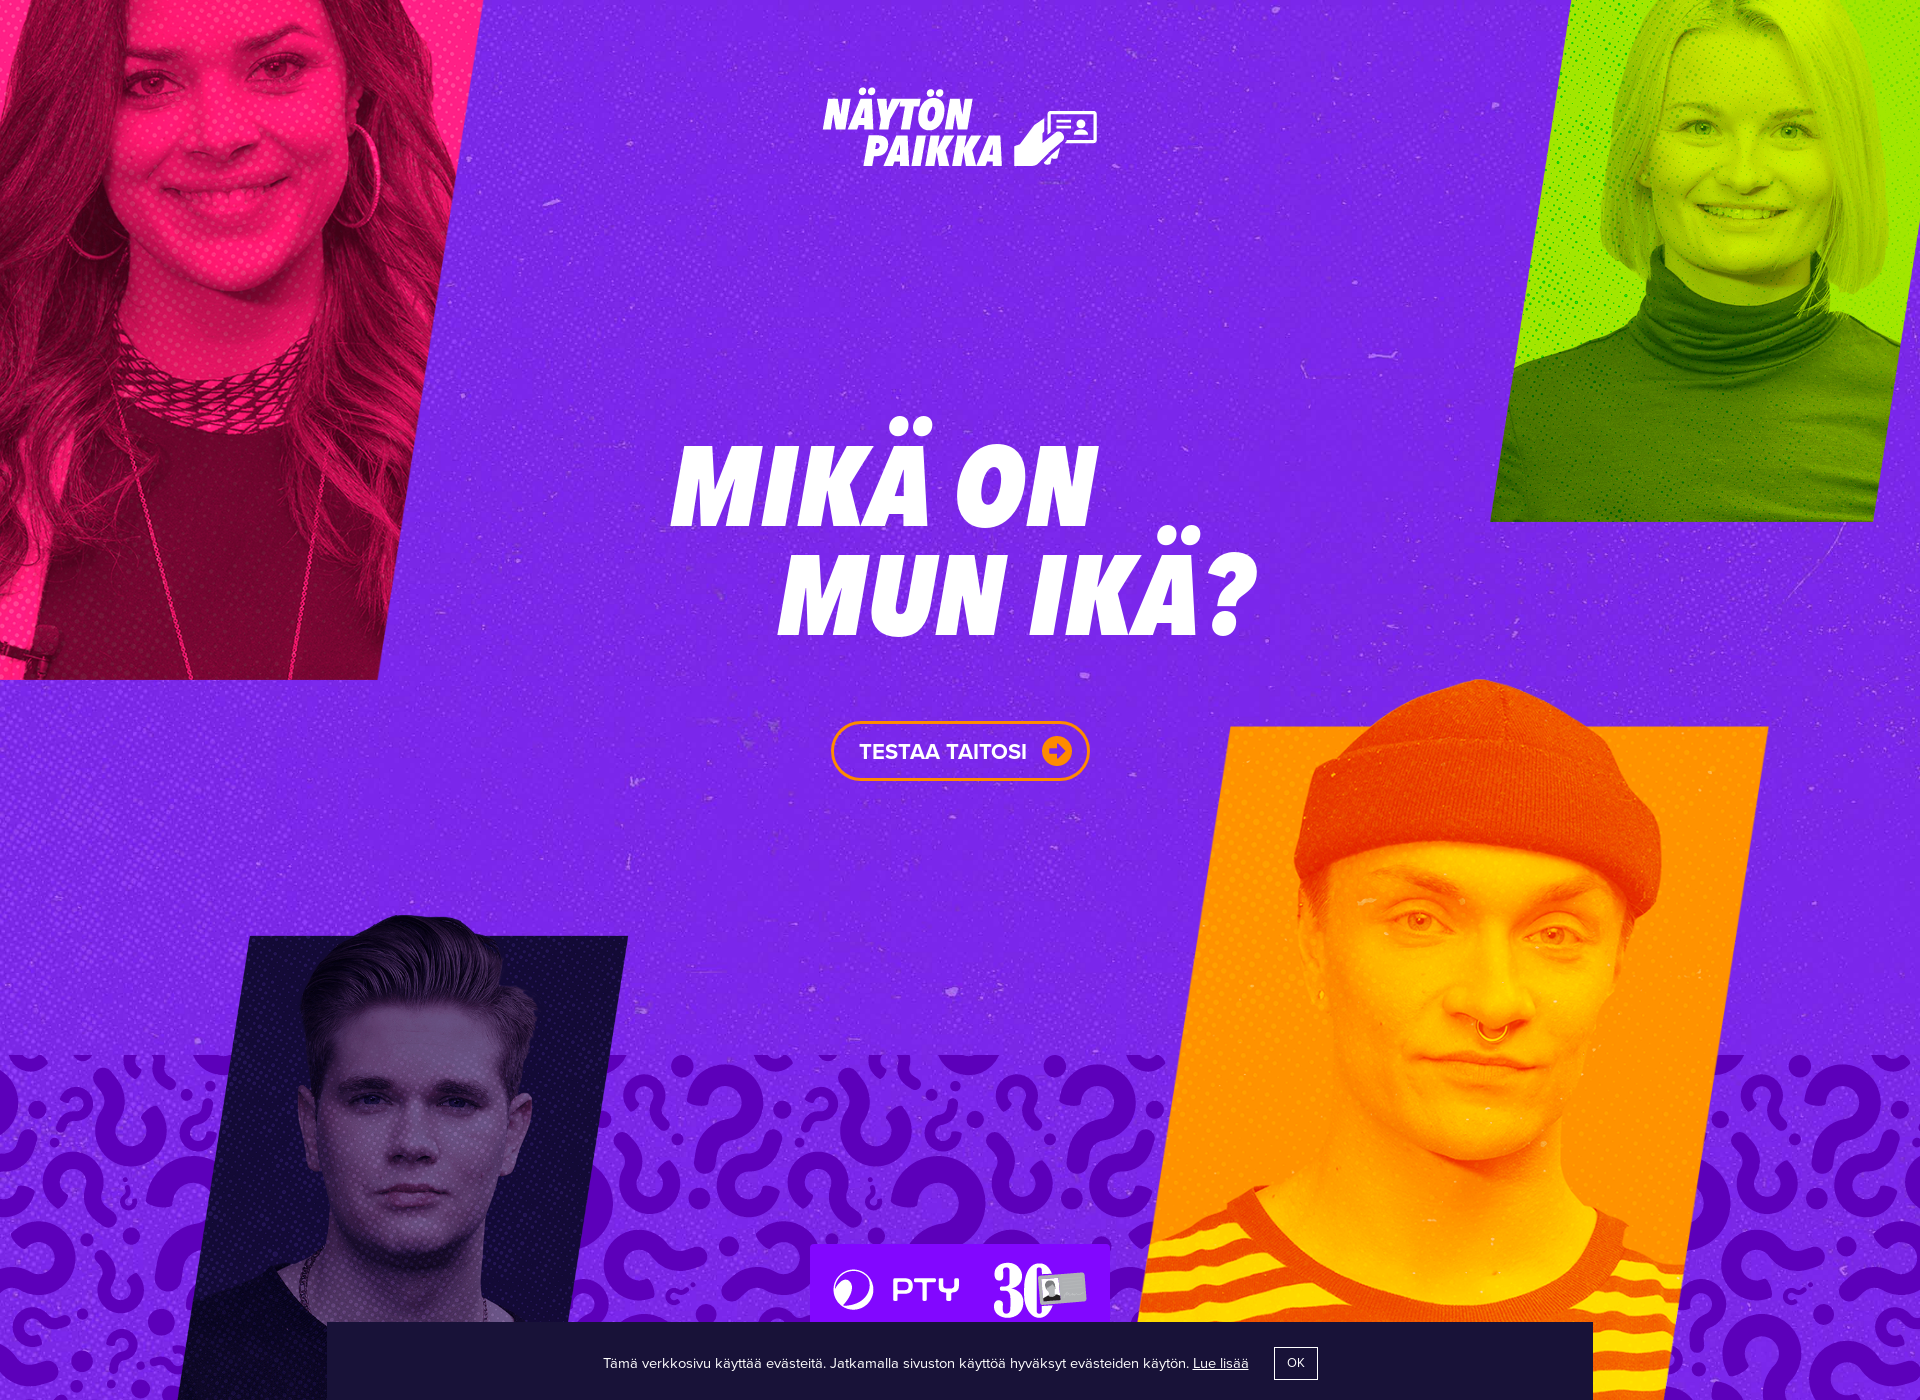 Näyttökuva mikaonmunika.fi